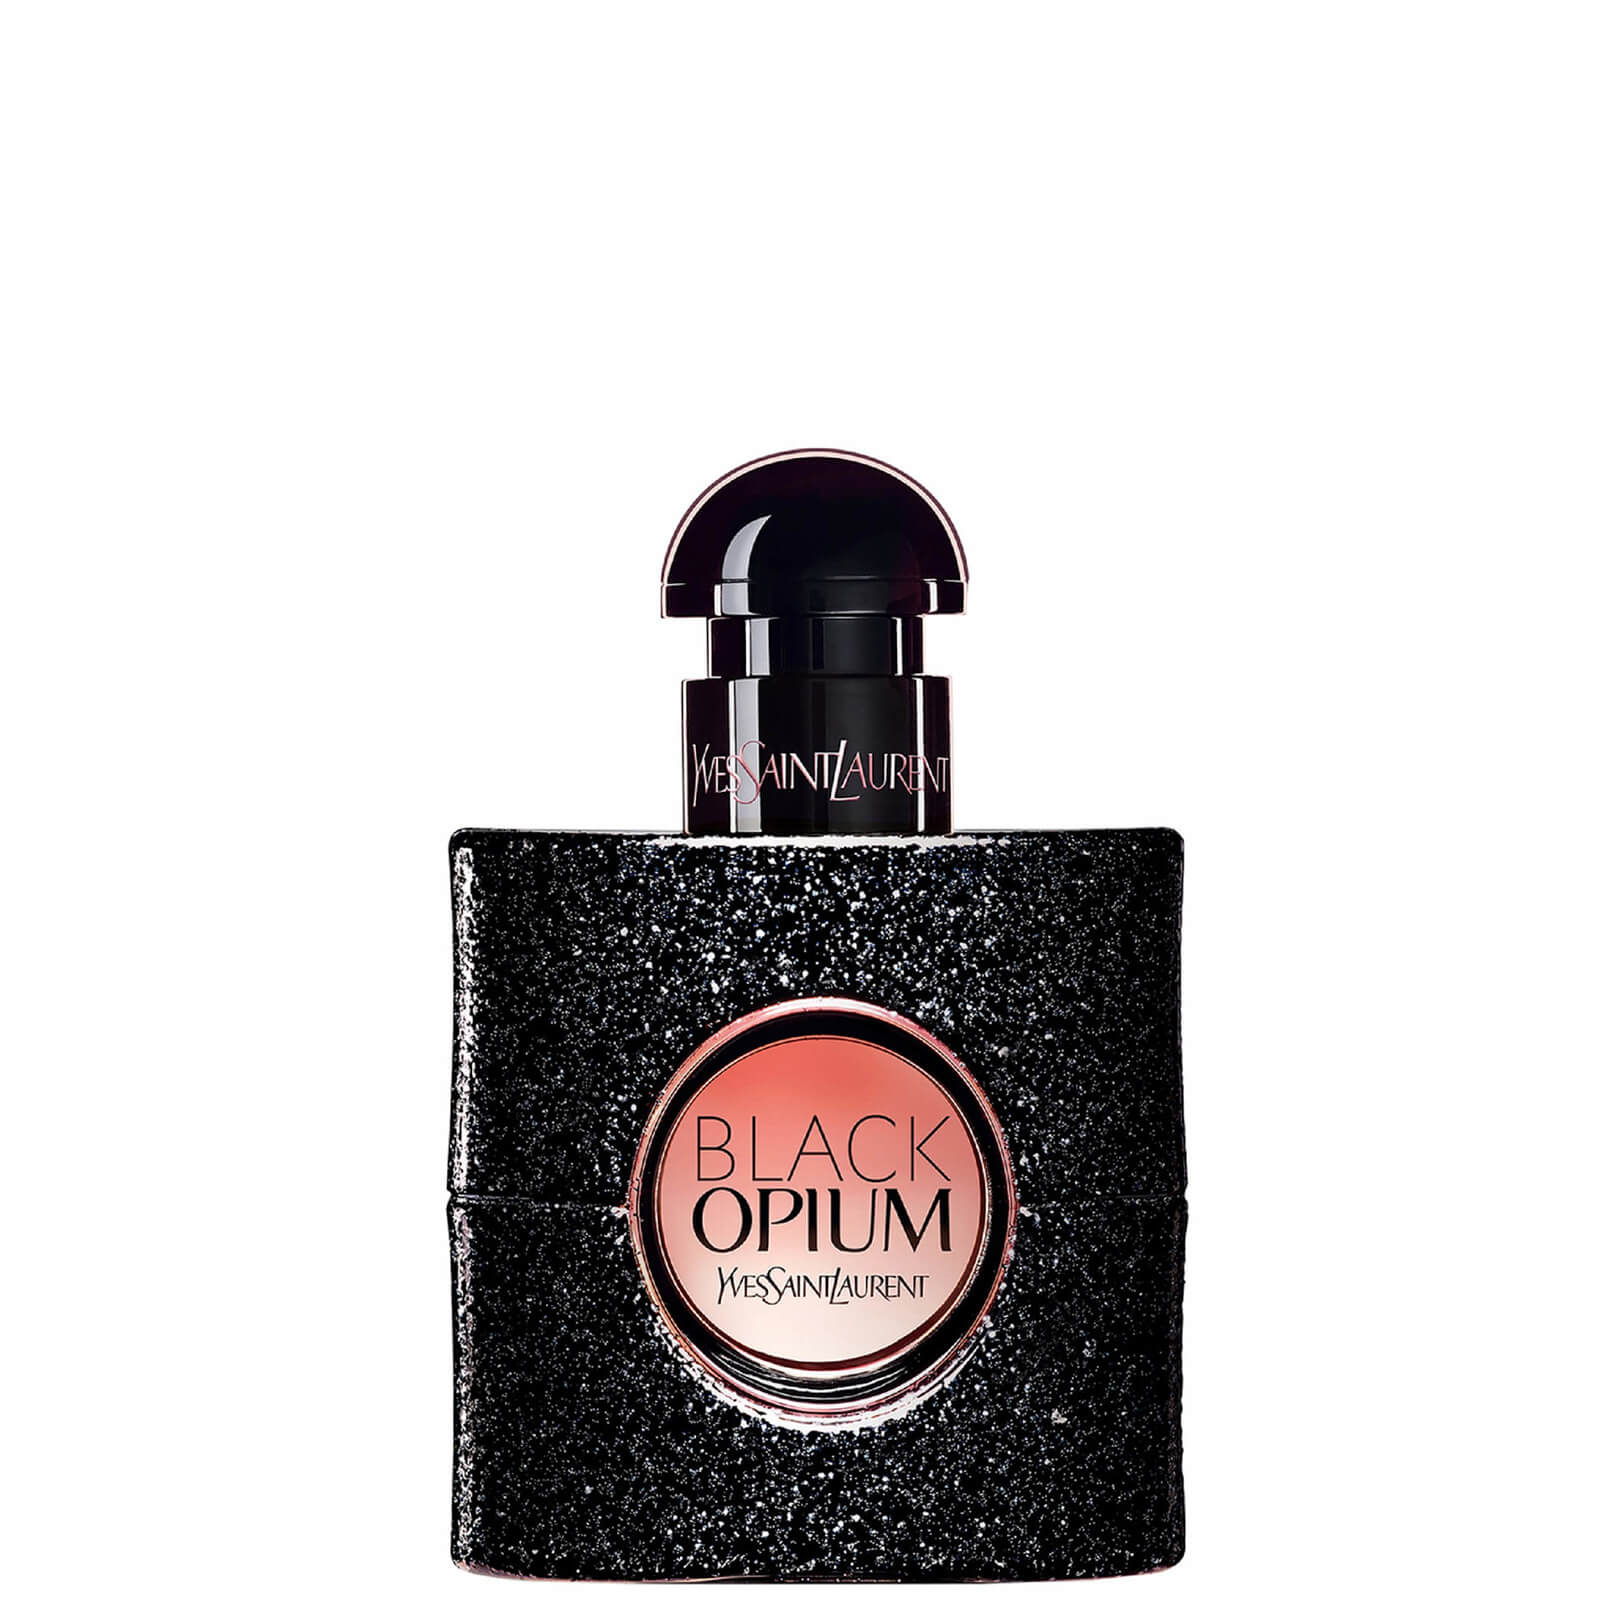 Ysl Yves Saint Laurent Black Opium Eau de Parfum 30ml